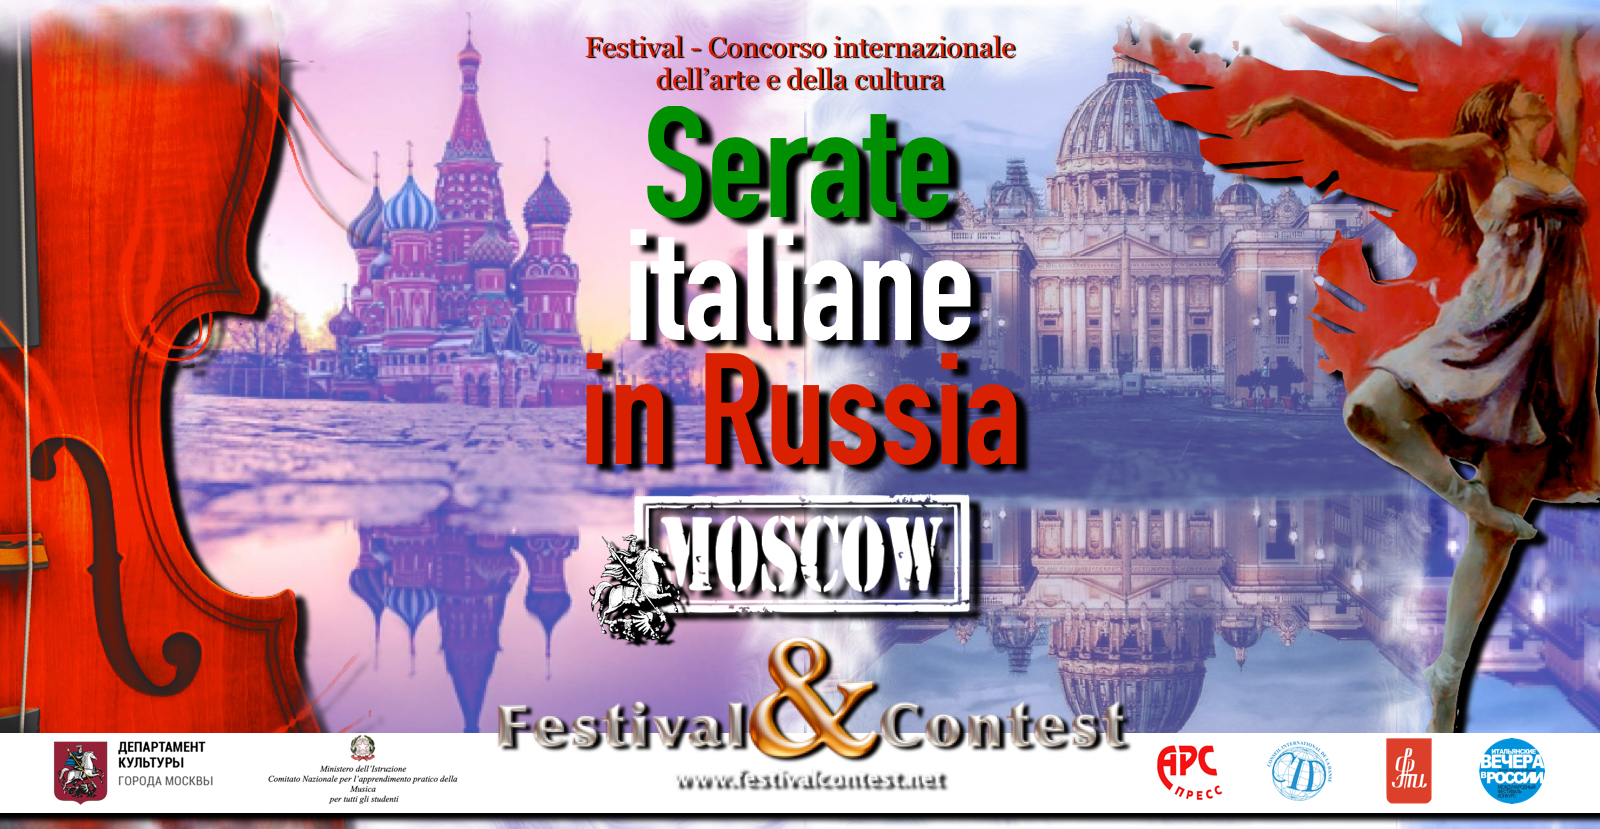 Festival/Concorso Internazionale dell’arte e della cultura, serate italiana in Russia 